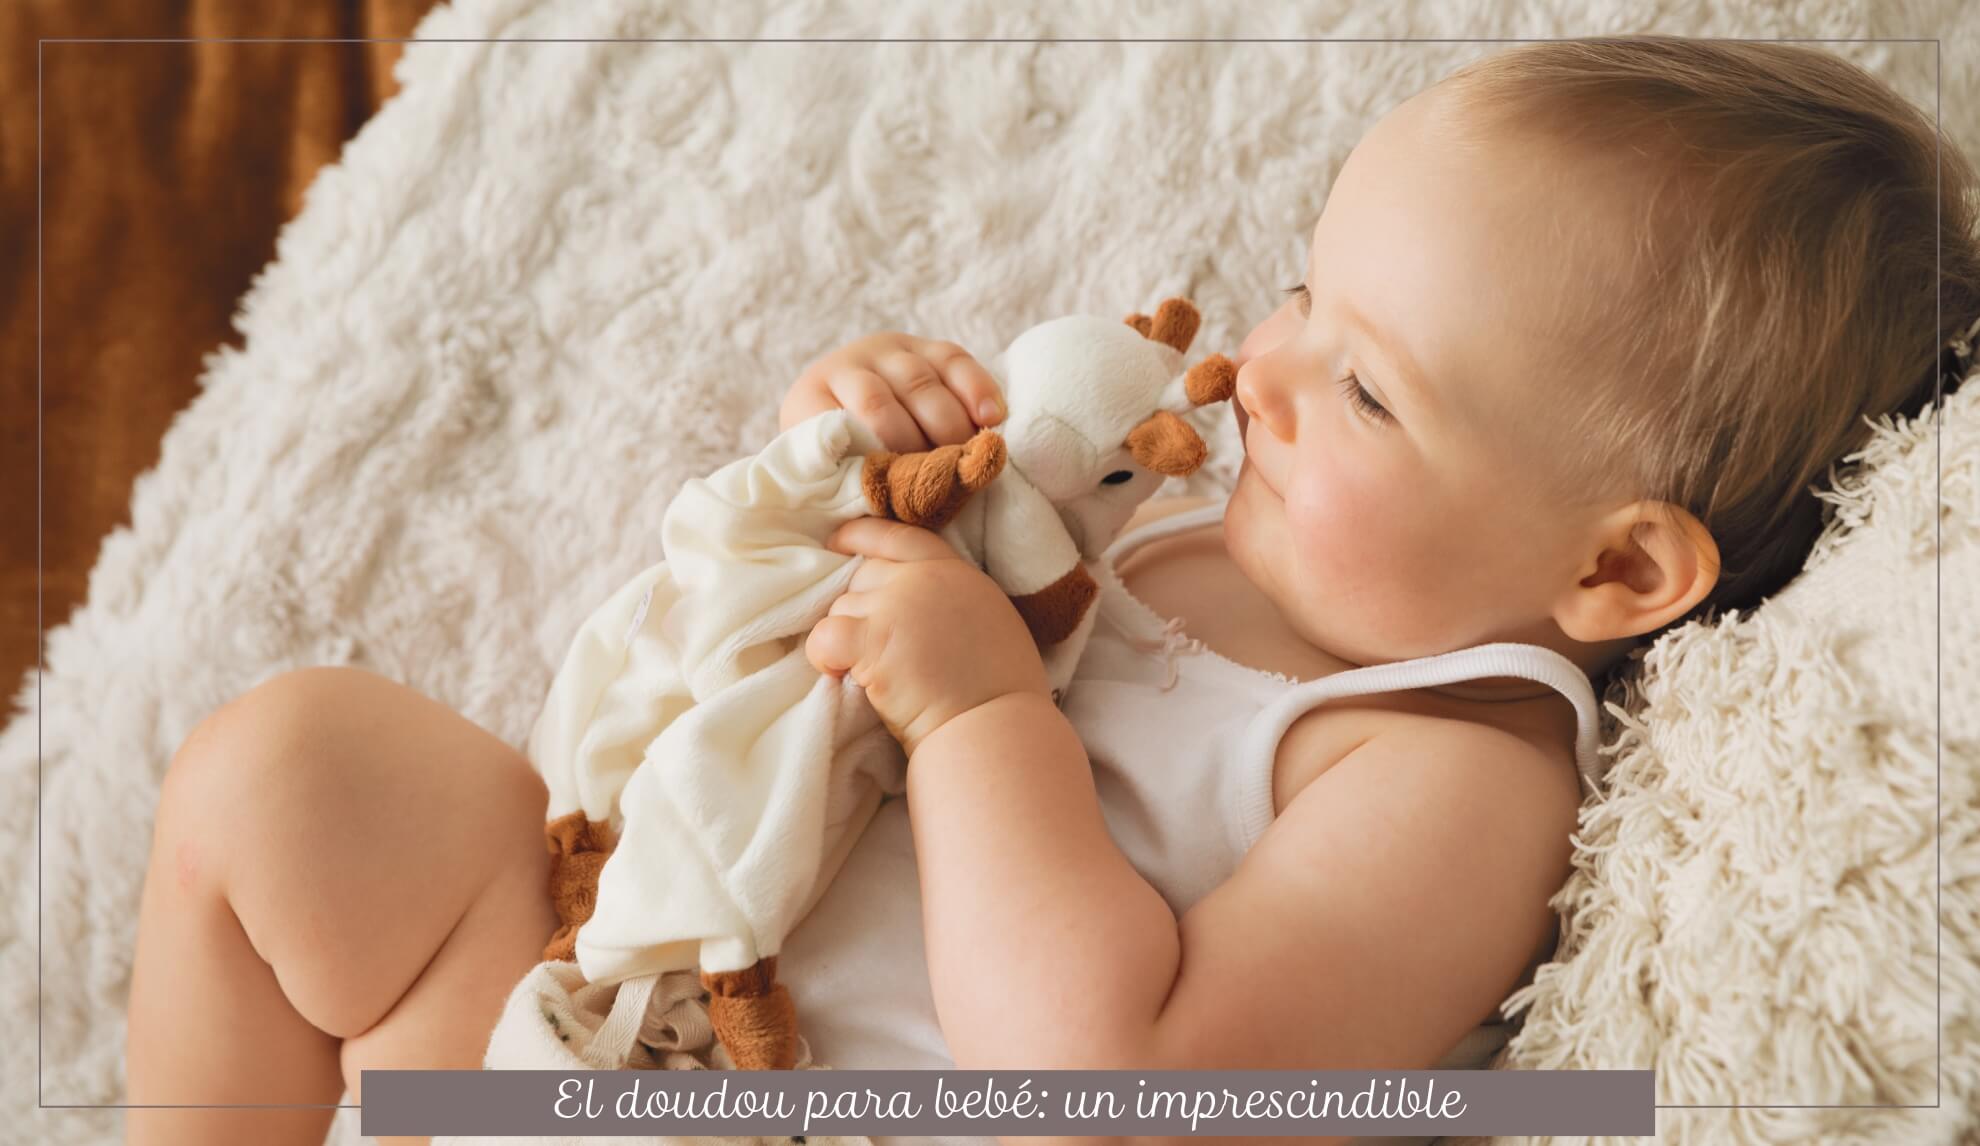 Qué son los doudou para bebés y para qué sirven?